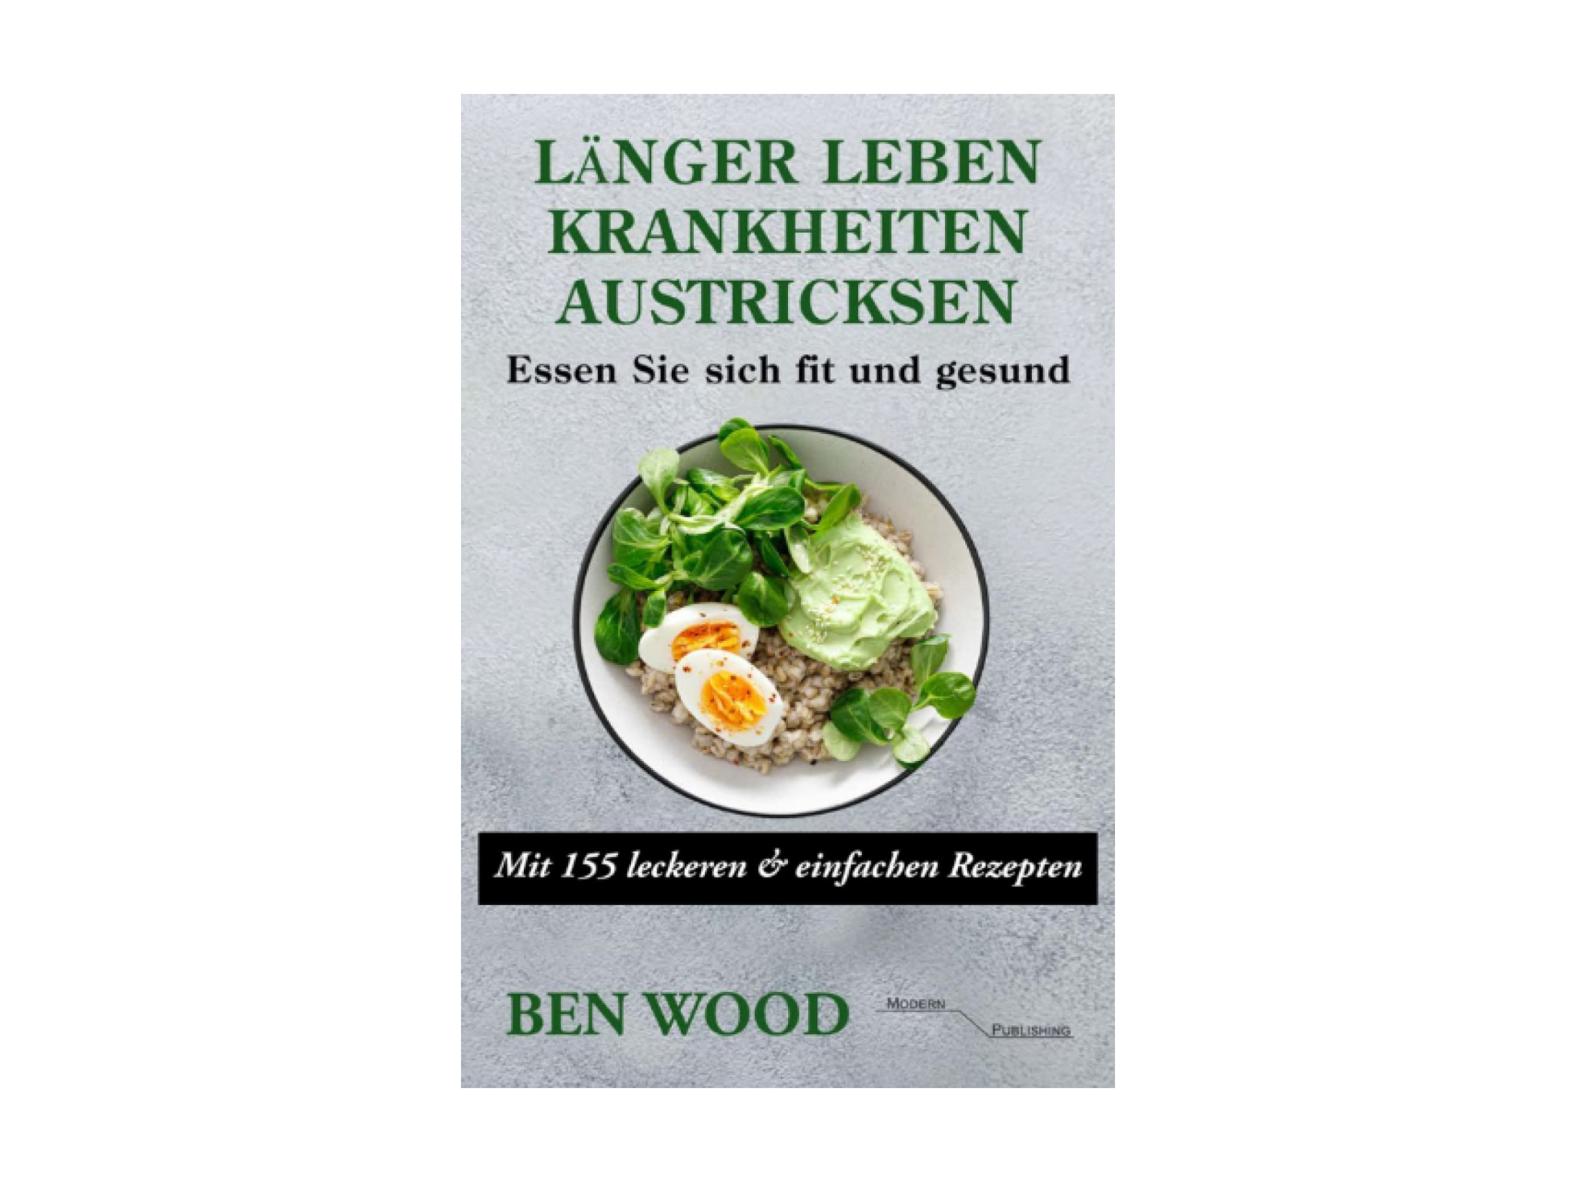 Länger Leben: Krankheiten austricksen - Essen Sie sich fit und gesund: Mit 155 leckeren & einfachen Rezepten (Buch)